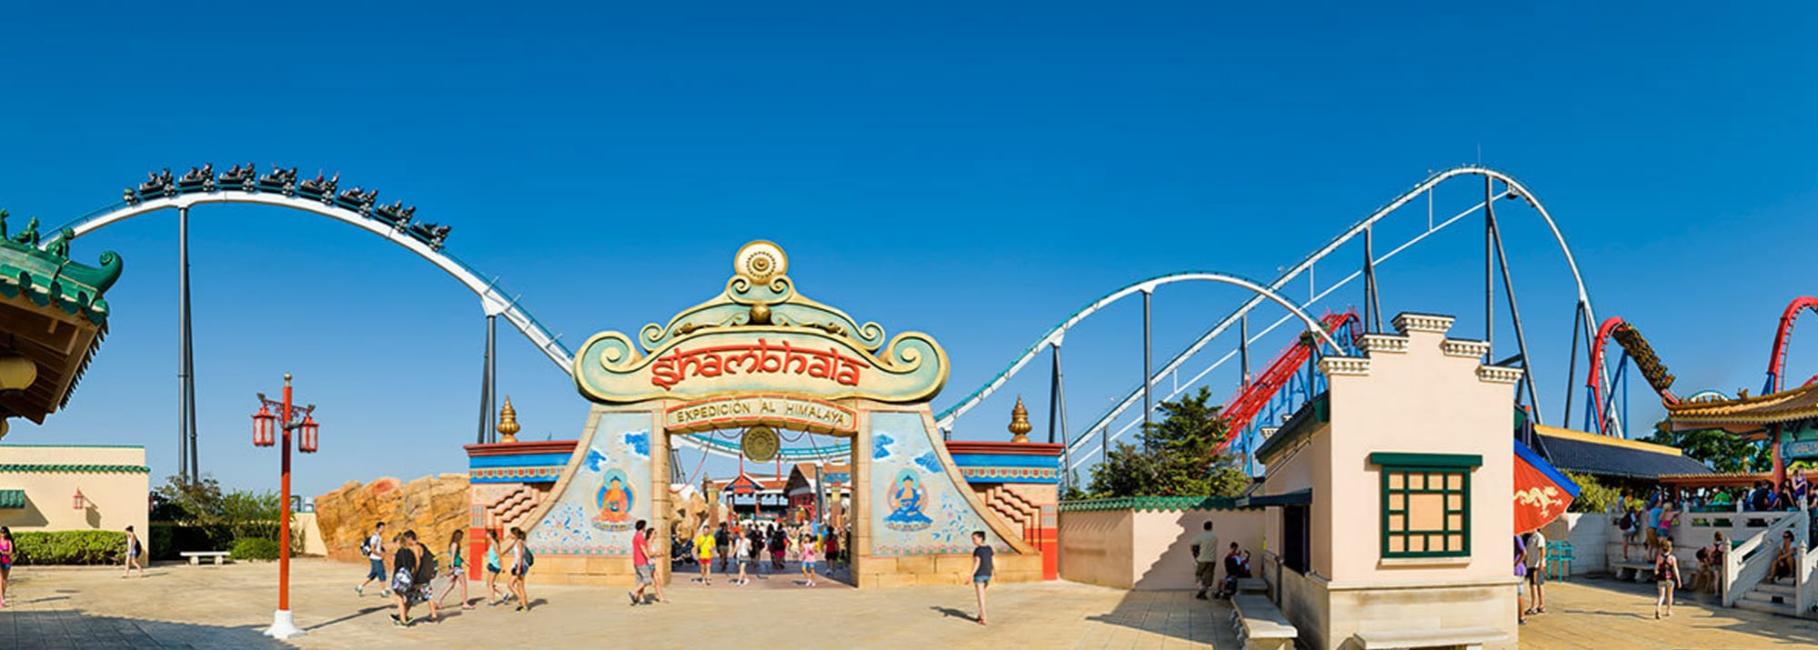 barcelona theme park trip header nstie